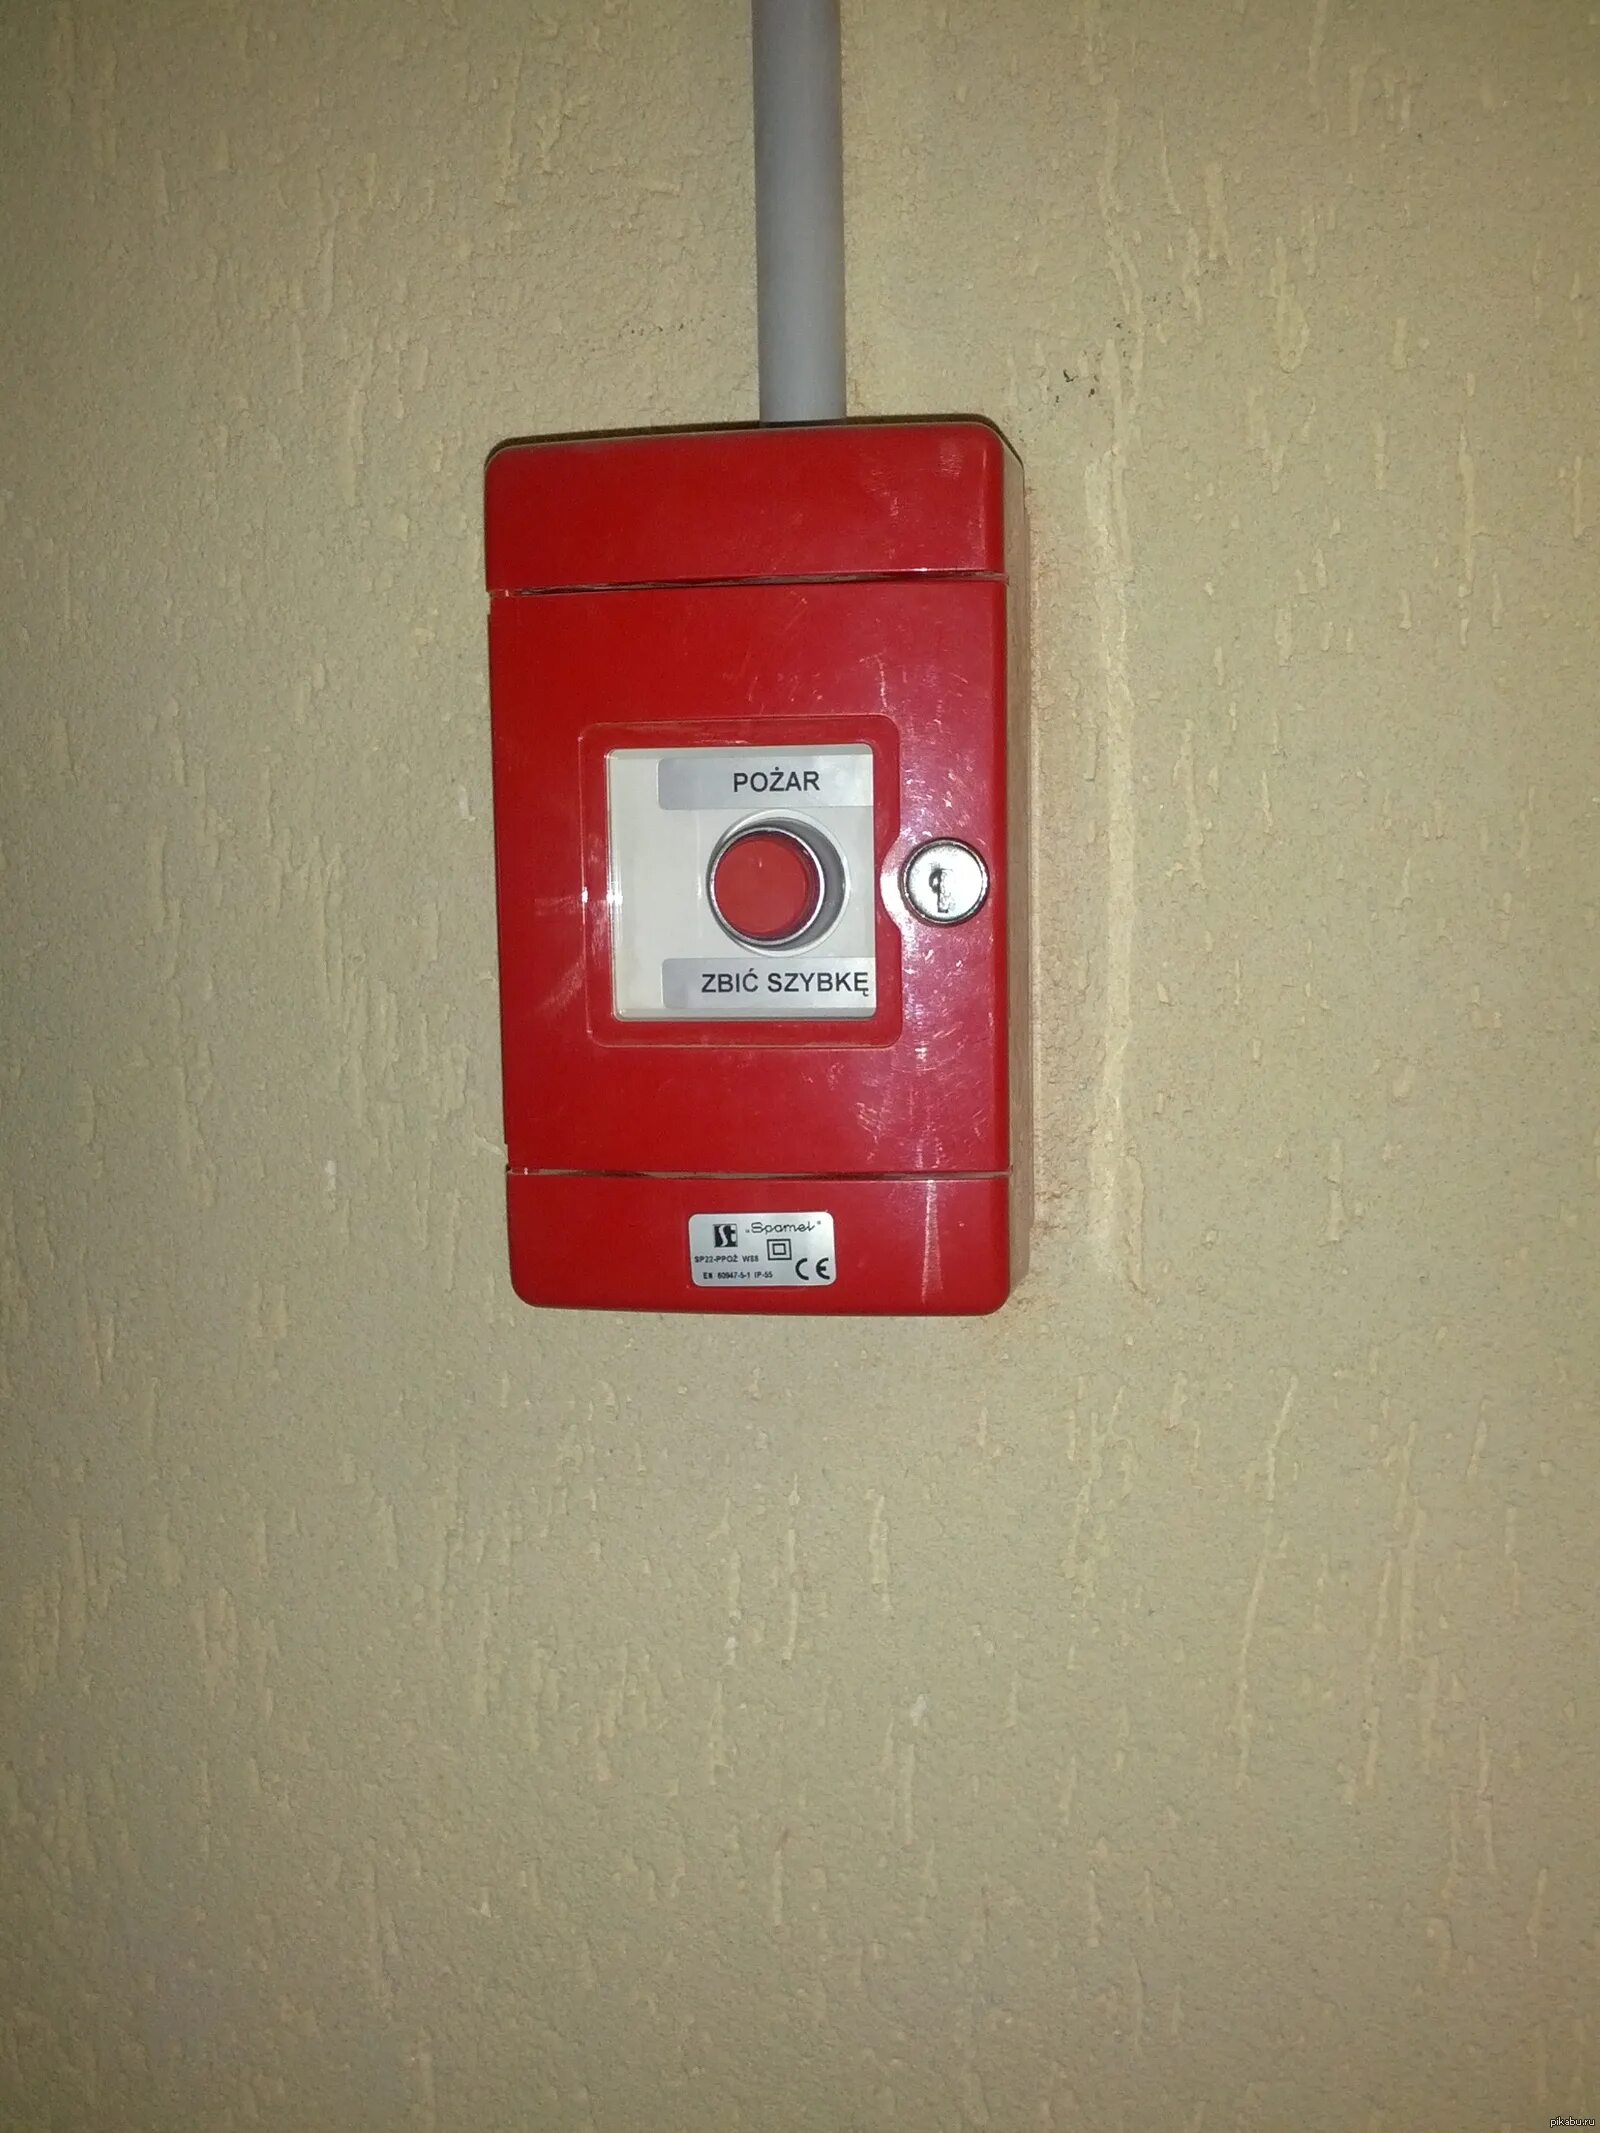 Пожарная кнопка. Кнопка пожарной сигнализации. Кнопка пожарной тревоги. Пожарная кнопка противопожарная кнопка. Пожарная кнопка купить